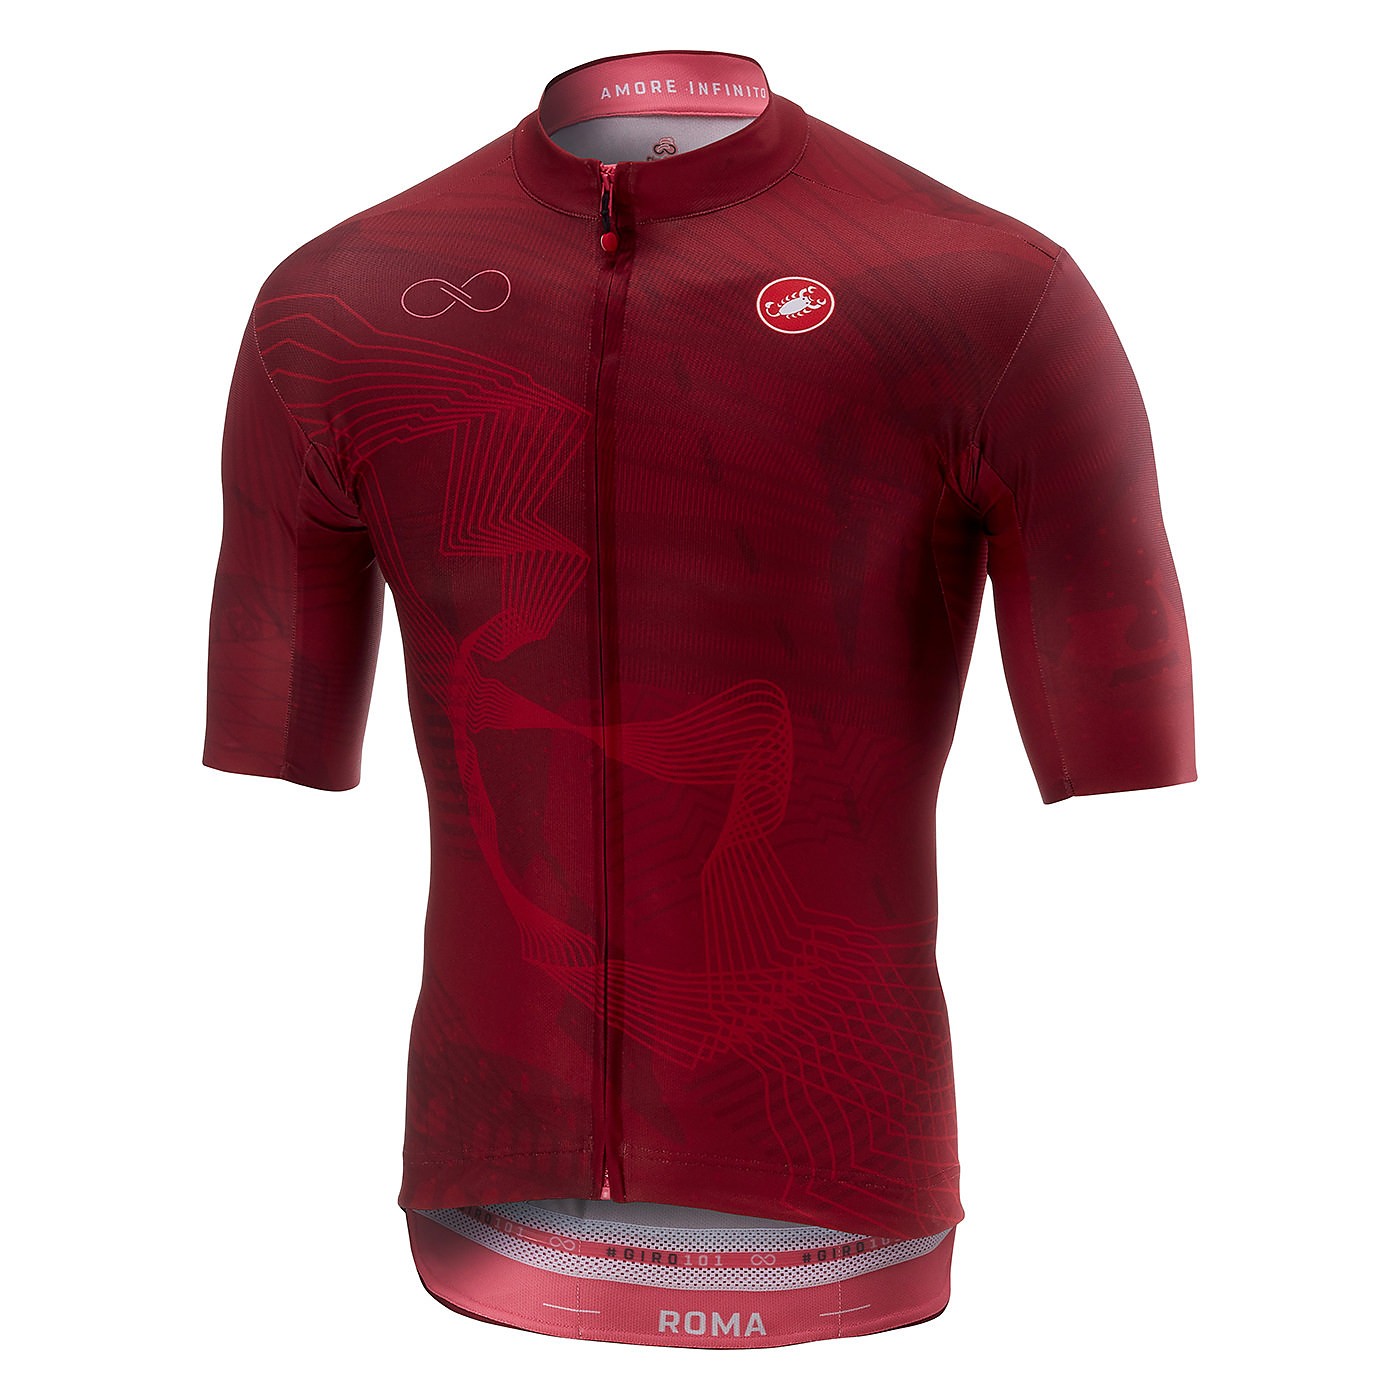 vis Makkelijk te gebeuren Meerdere Castelli Giro d'Italia Roma fietsshirt met korte mouwen porpora rood